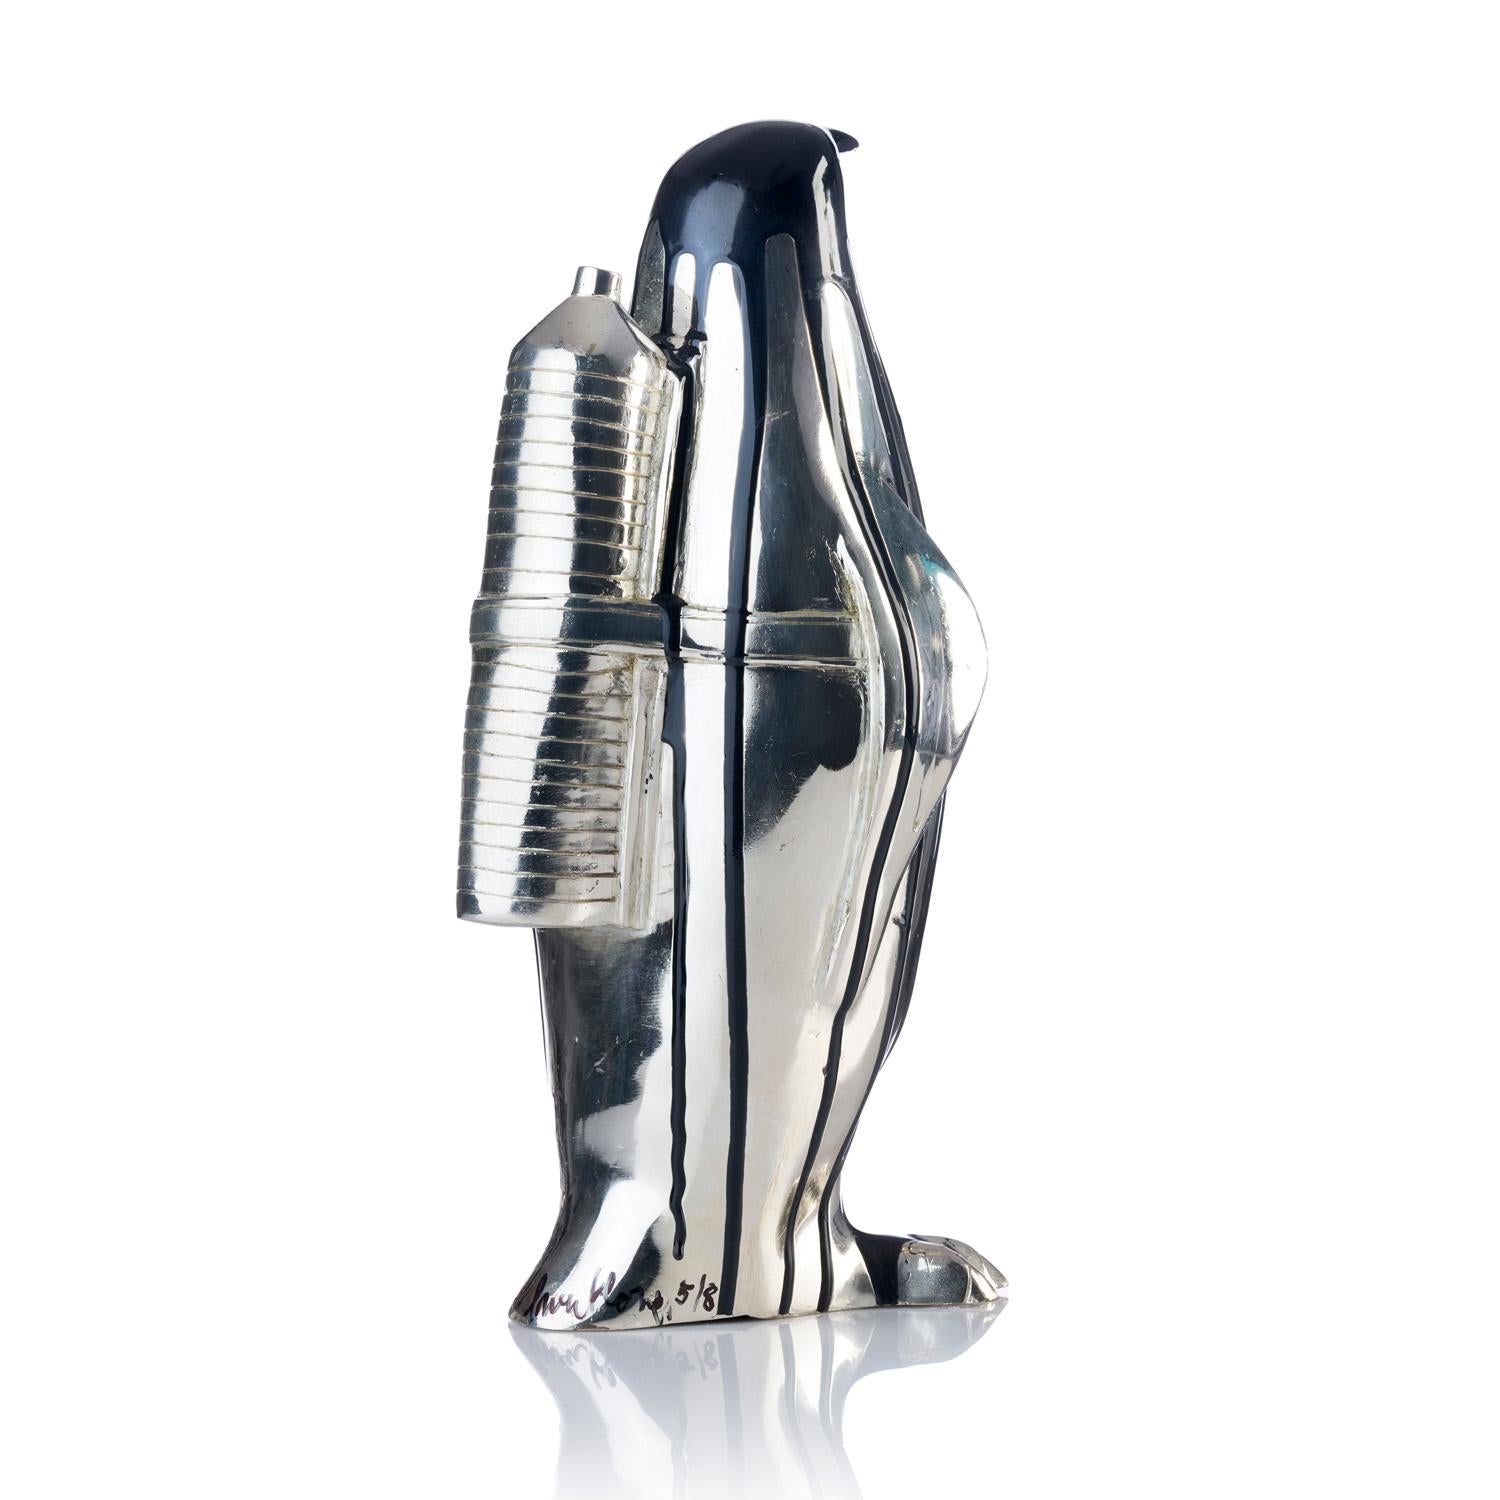 Pingouin cloné avec bouteille en plastique (noir)  - Sculpture de William Sweetlove